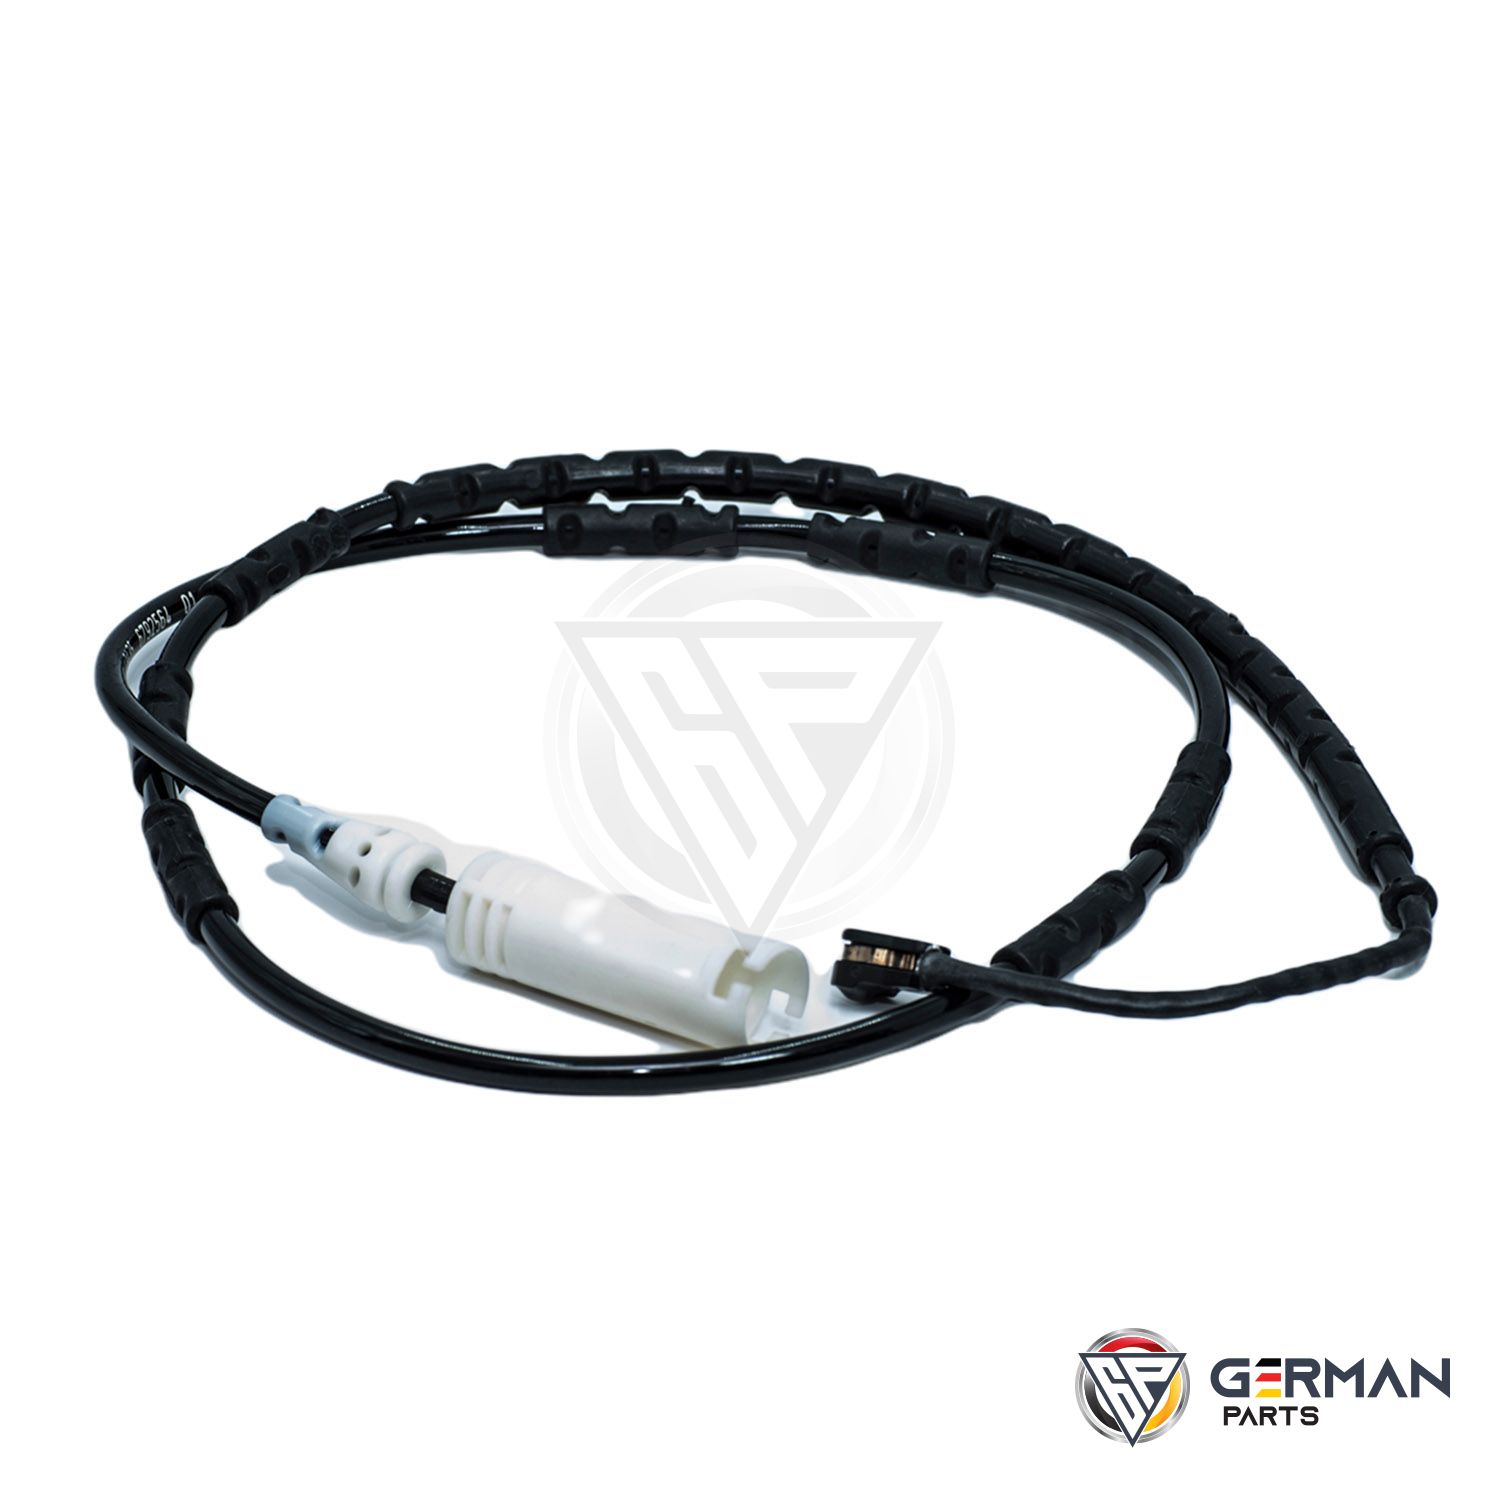 Buy Maxpart Brake Sensor SEM500080 - German Parts